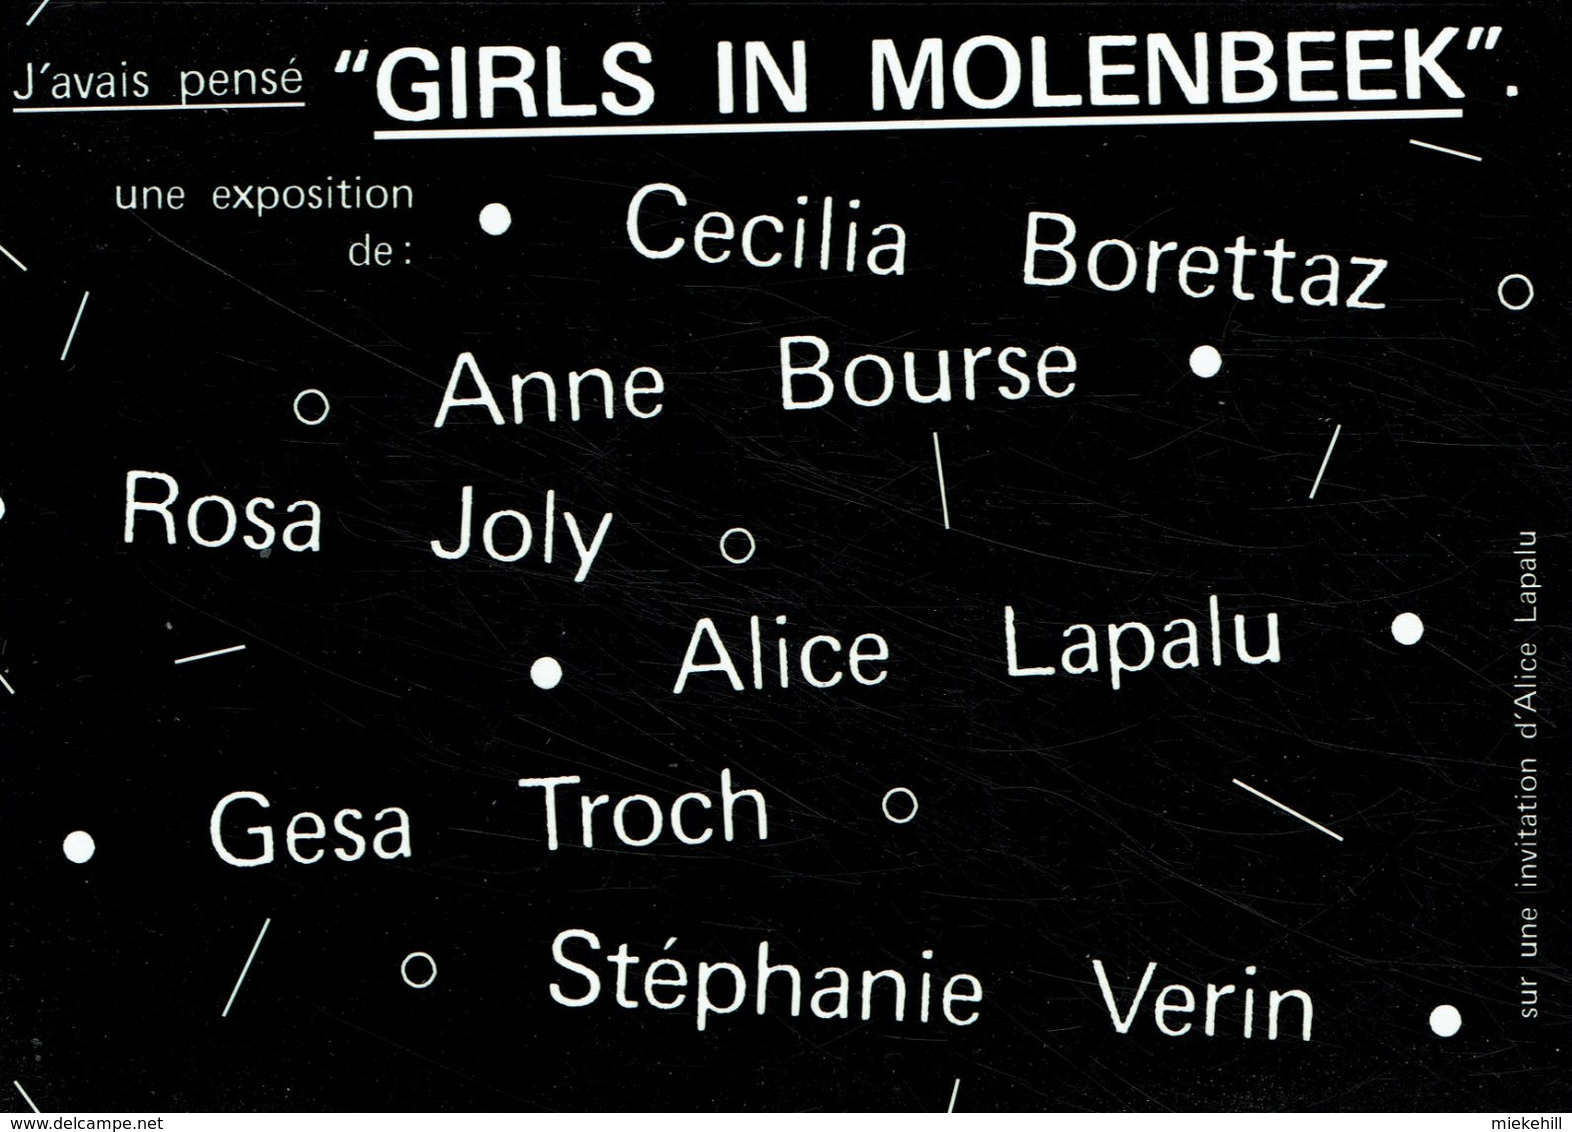 MOLENBEEK -GIRLS-ATELIER BEK-RUE DU RUISSEAU - Molenbeek-St-Jean - St-Jans-Molenbeek